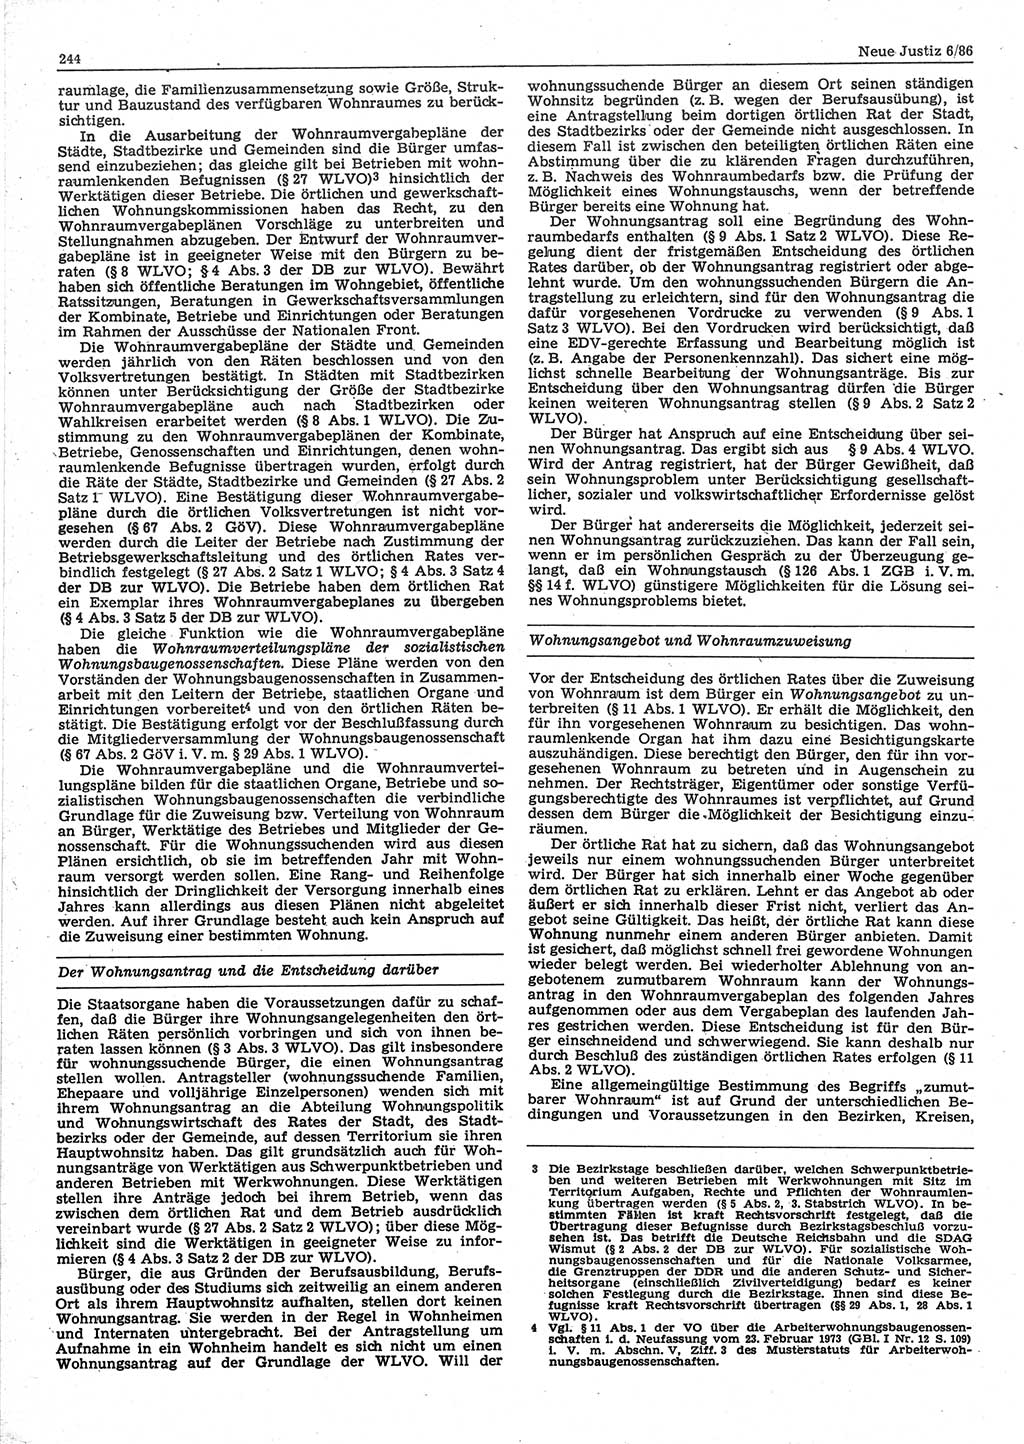 Neue Justiz (NJ), Zeitschrift für sozialistisches Recht und Gesetzlichkeit [Deutsche Demokratische Republik (DDR)], 40. Jahrgang 1986, Seite 244 (NJ DDR 1986, S. 244)